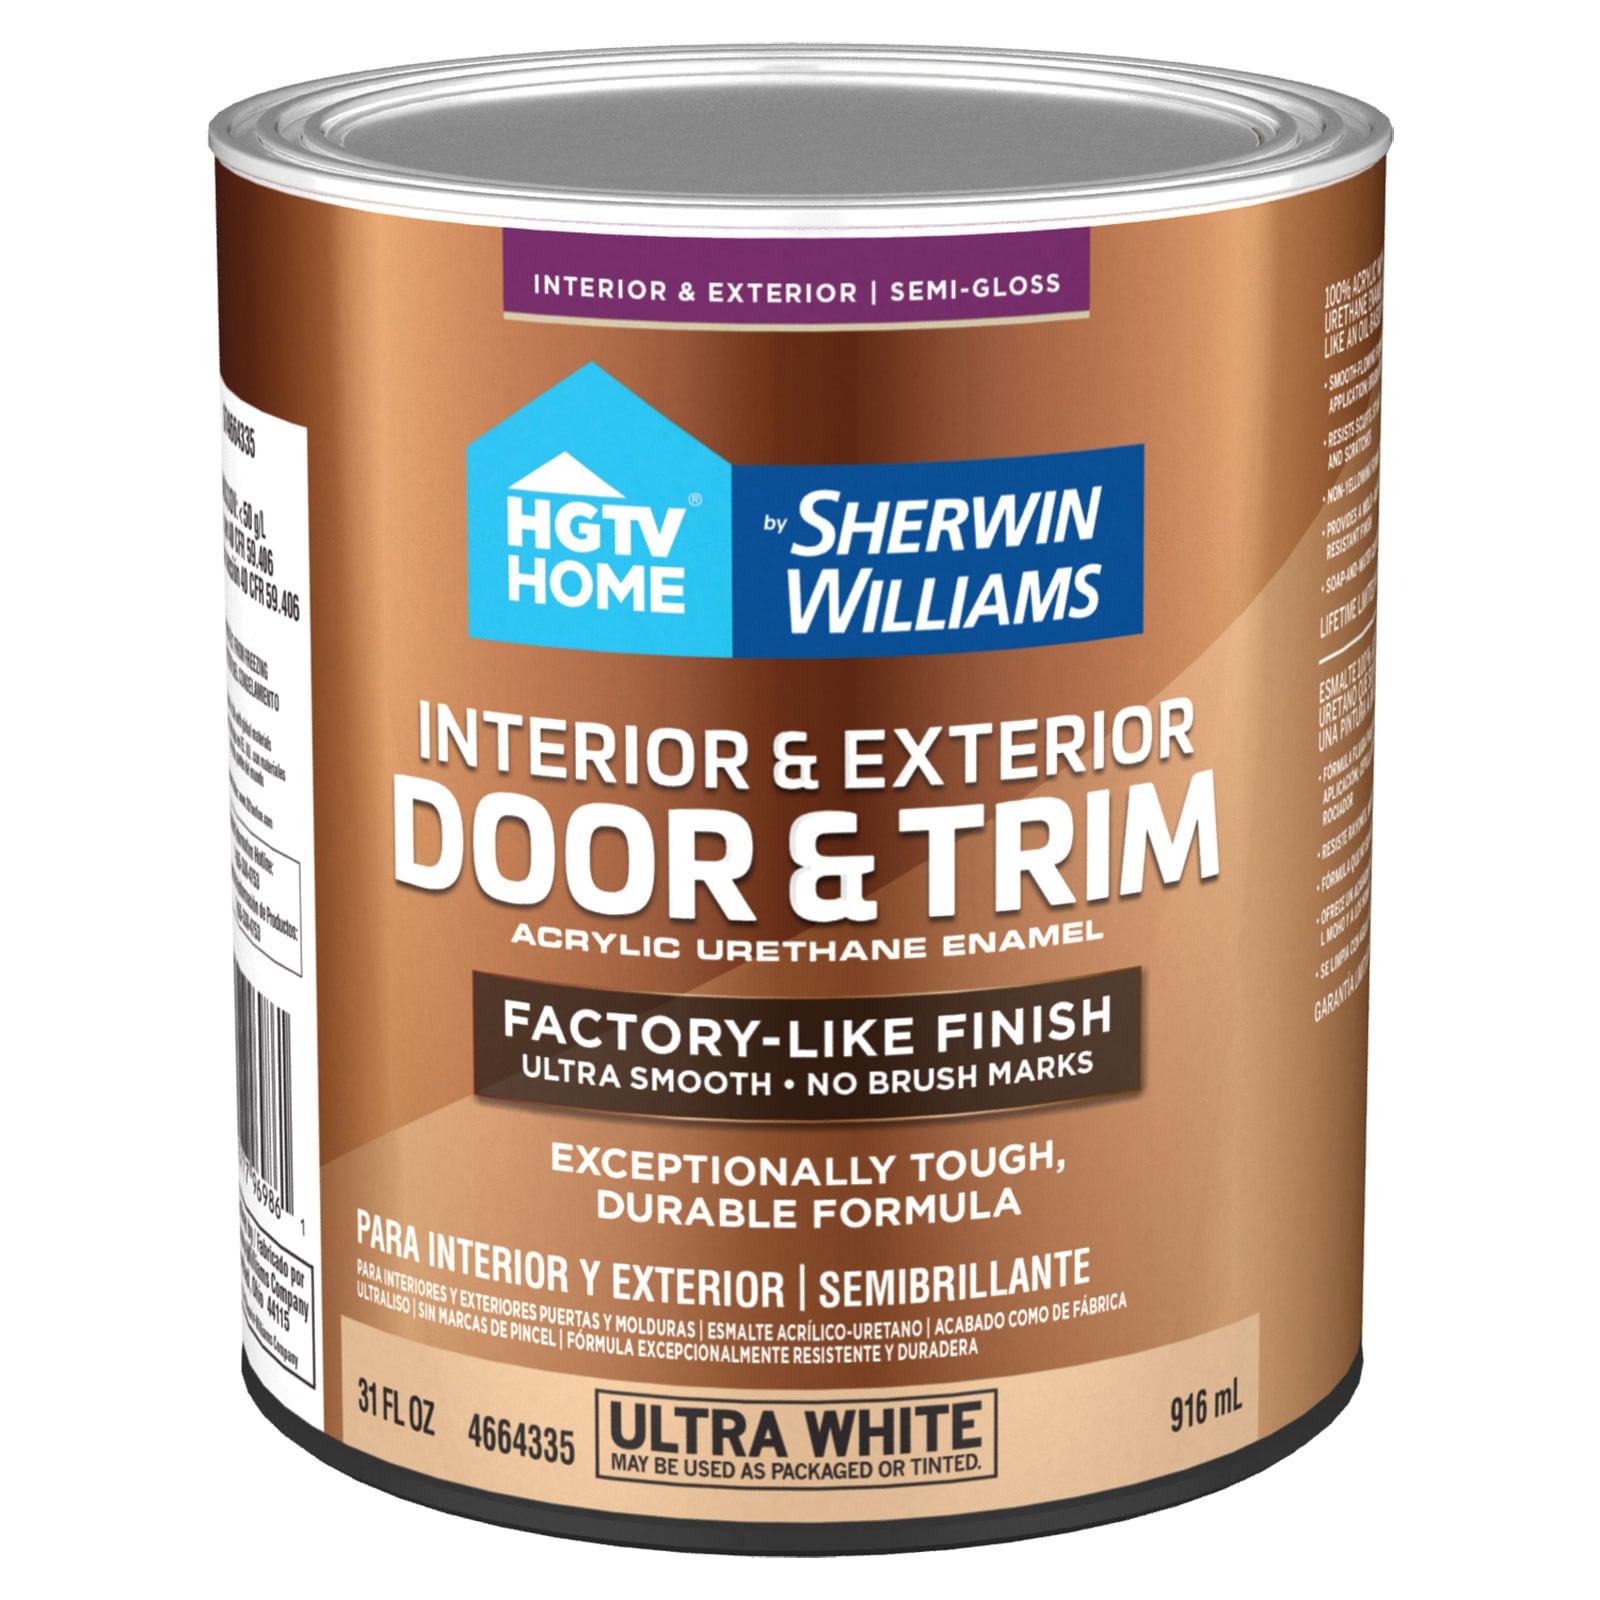 How to Paint Metal Doors - Semigloss Design